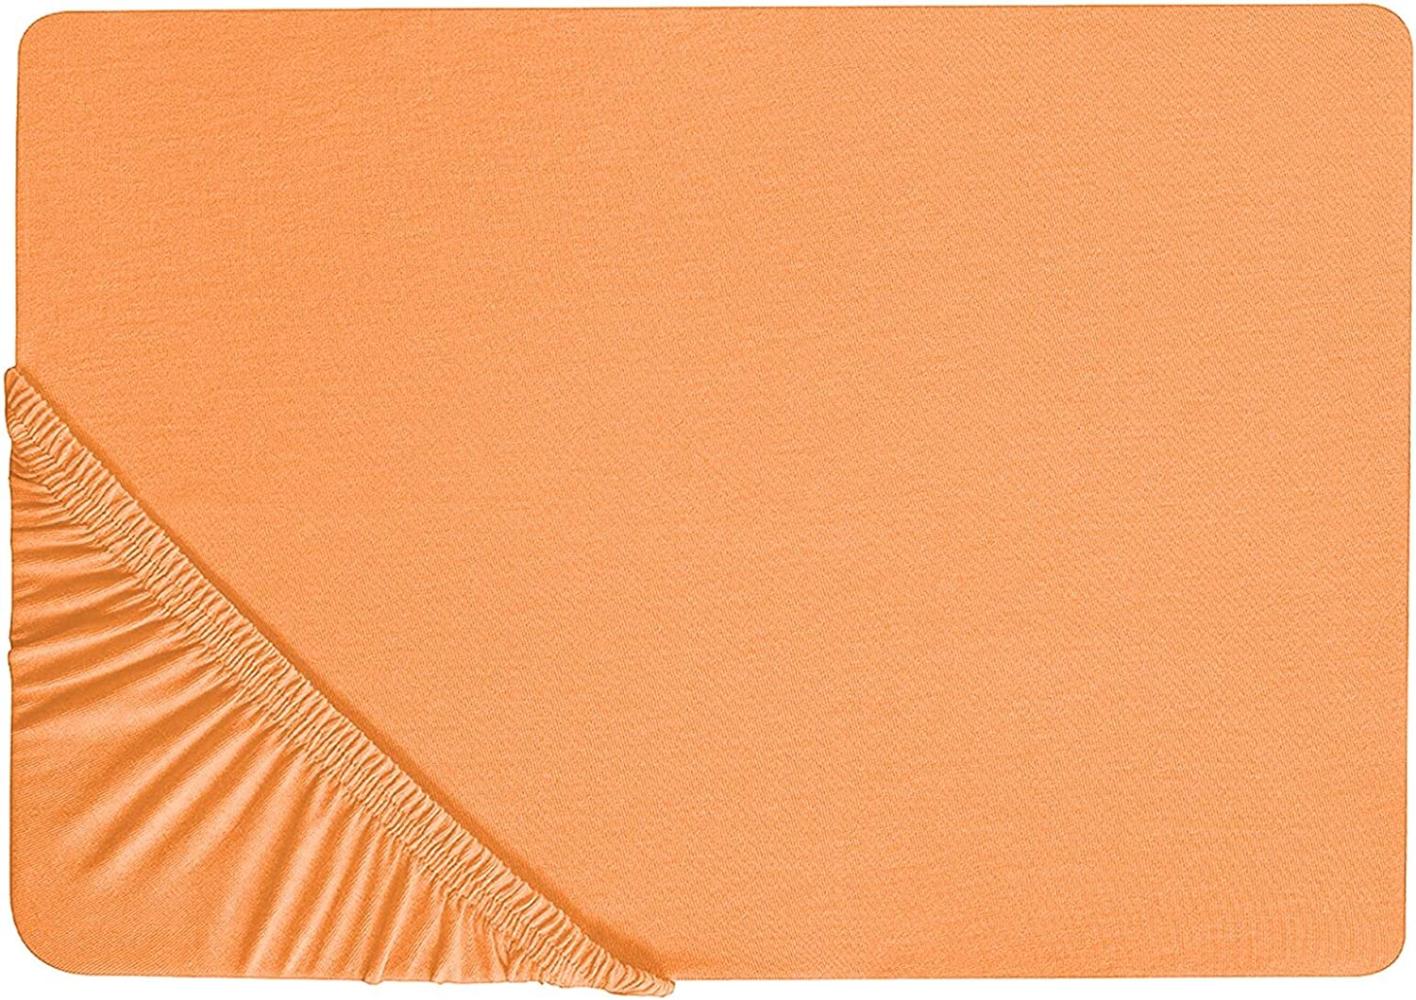 Spannbettlaken Baumwolle orange 180 x 200 cm JANBU Bild 1